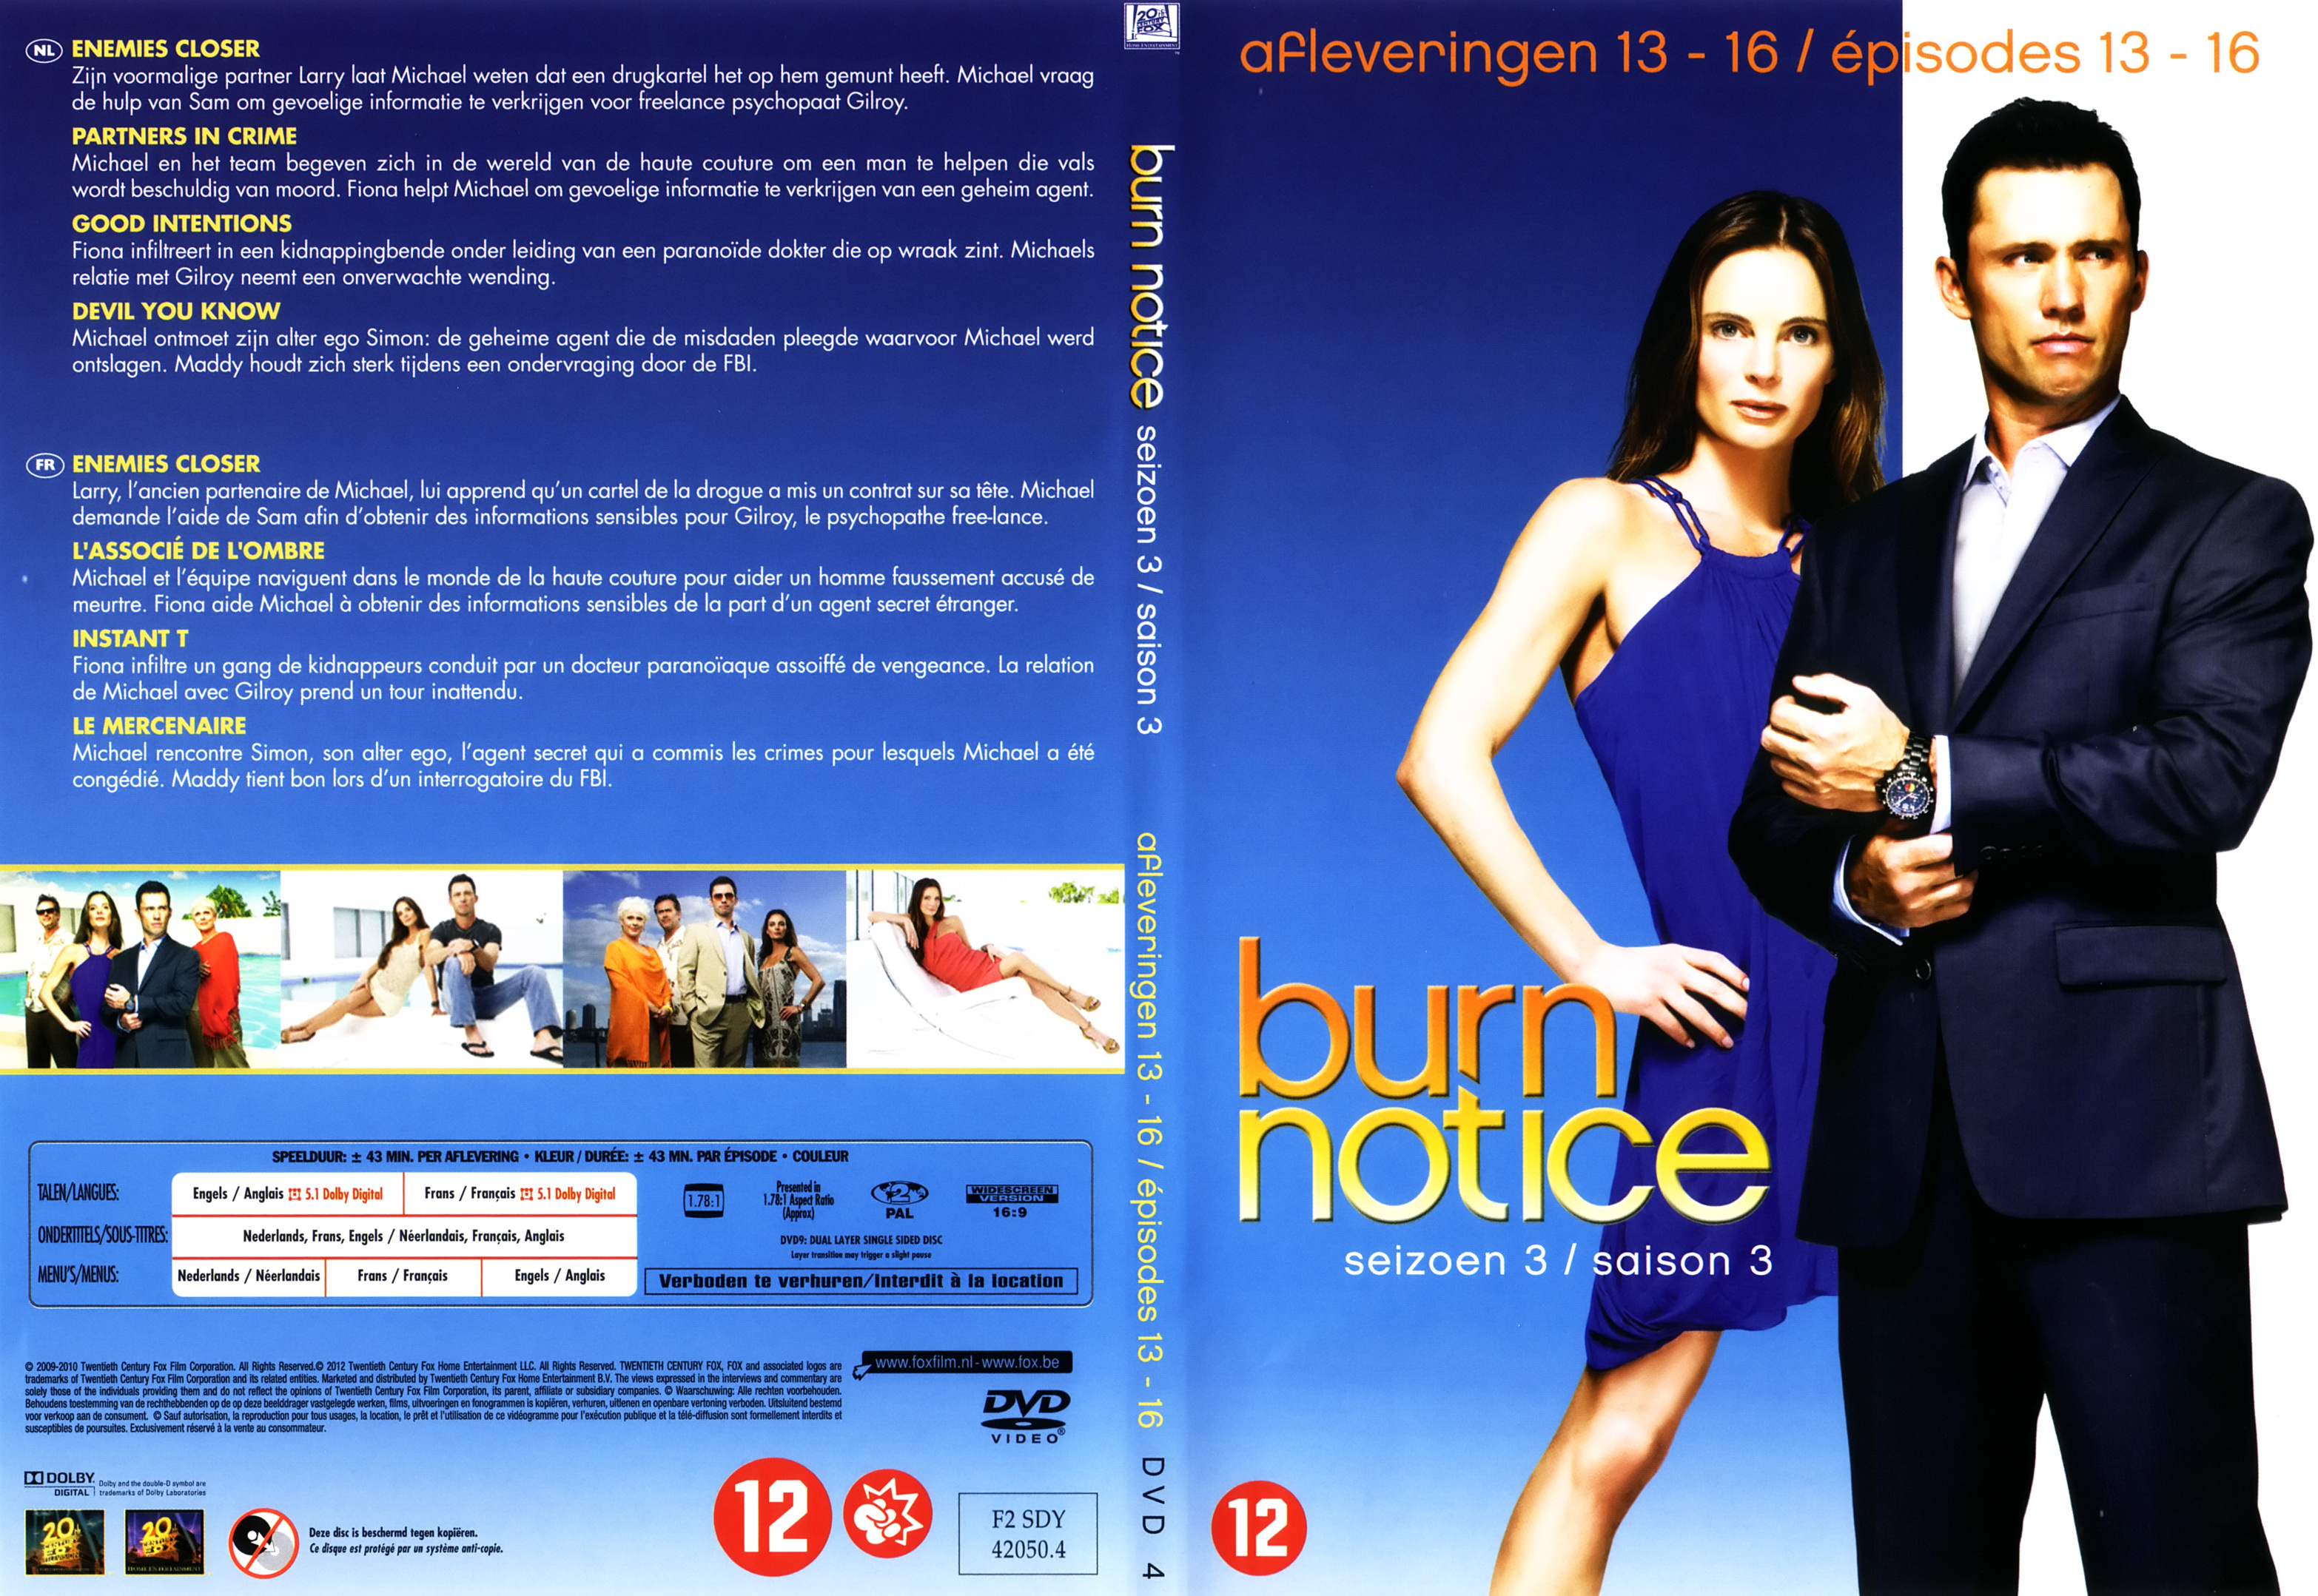 Jaquette DVD Burn notice Saison 3 DVD 4